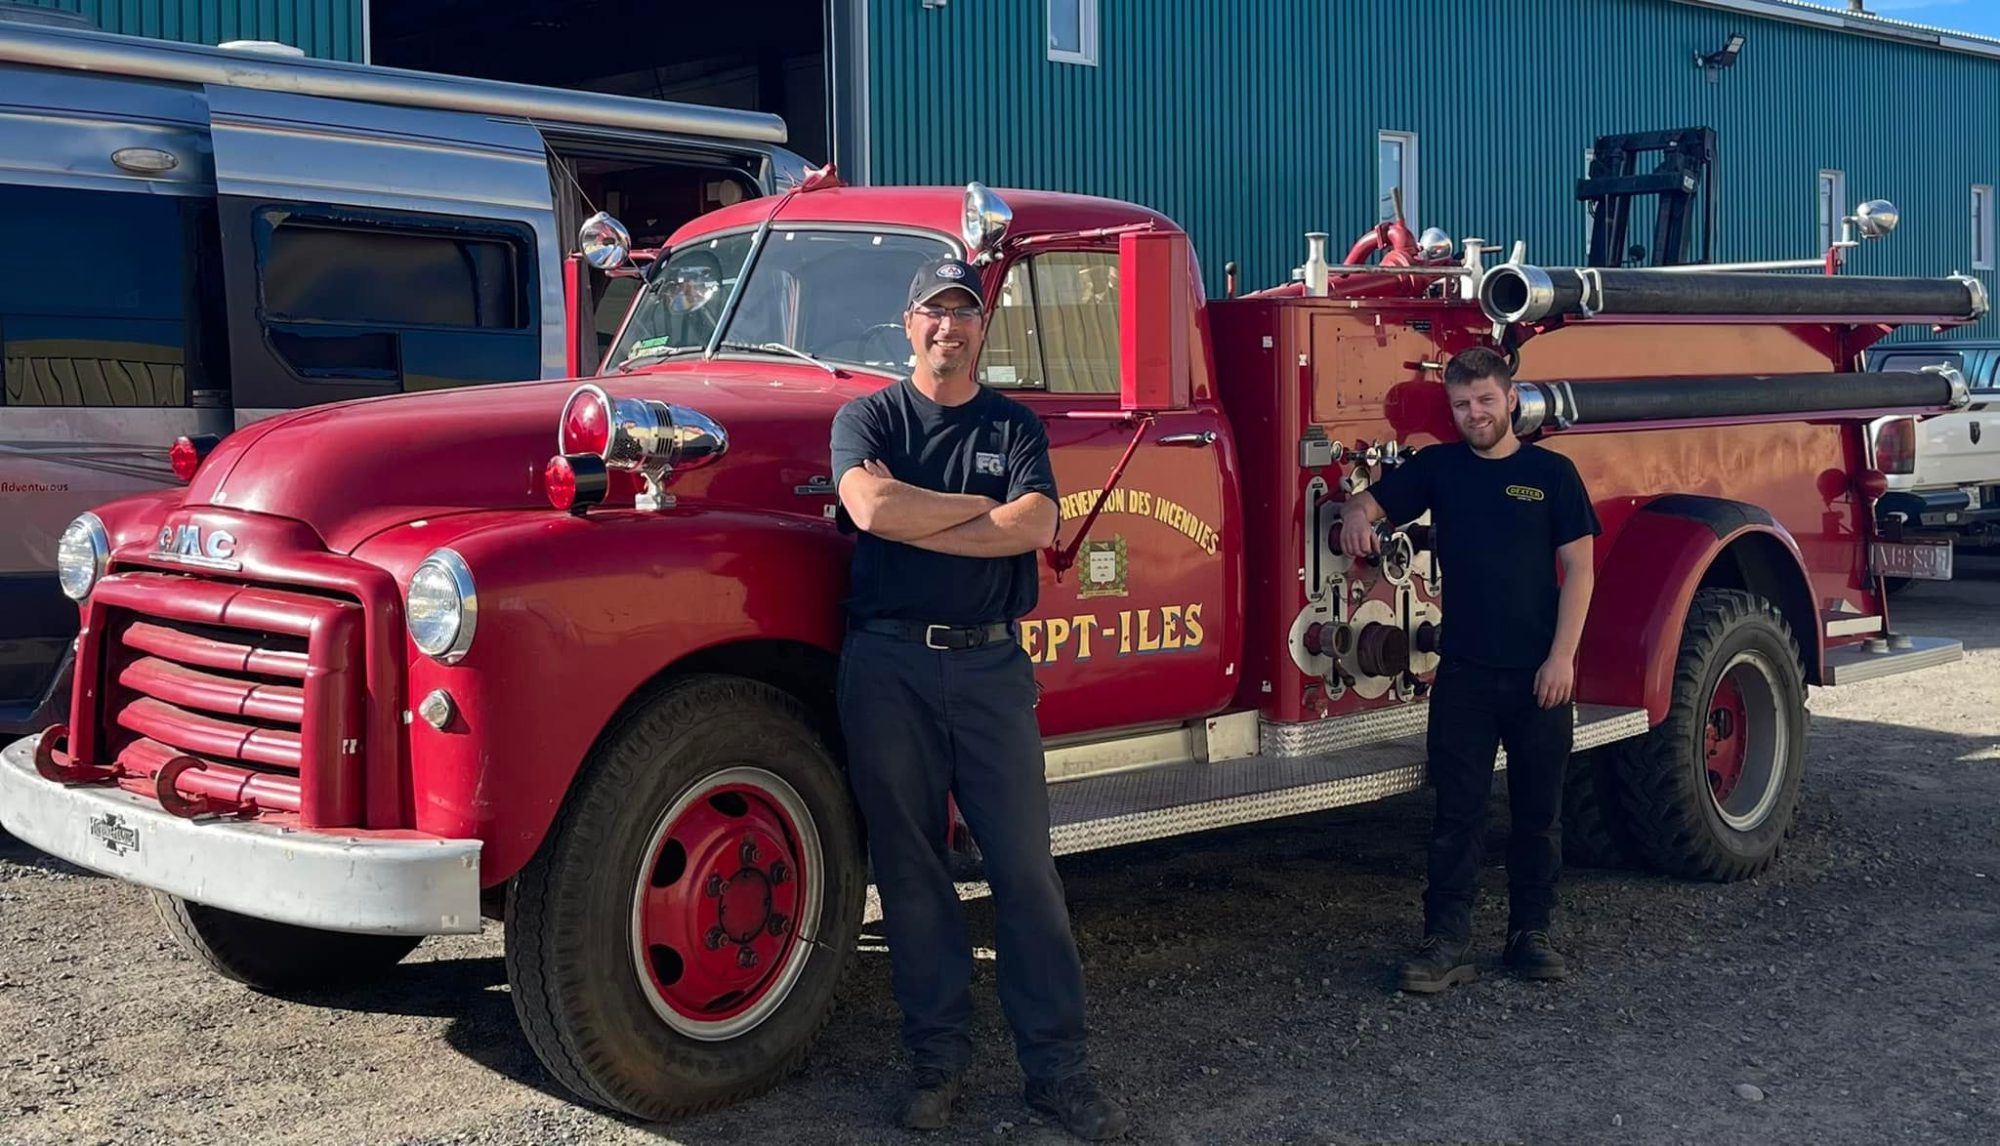 Un nouveau camion articulé pour les pompiers de Québec